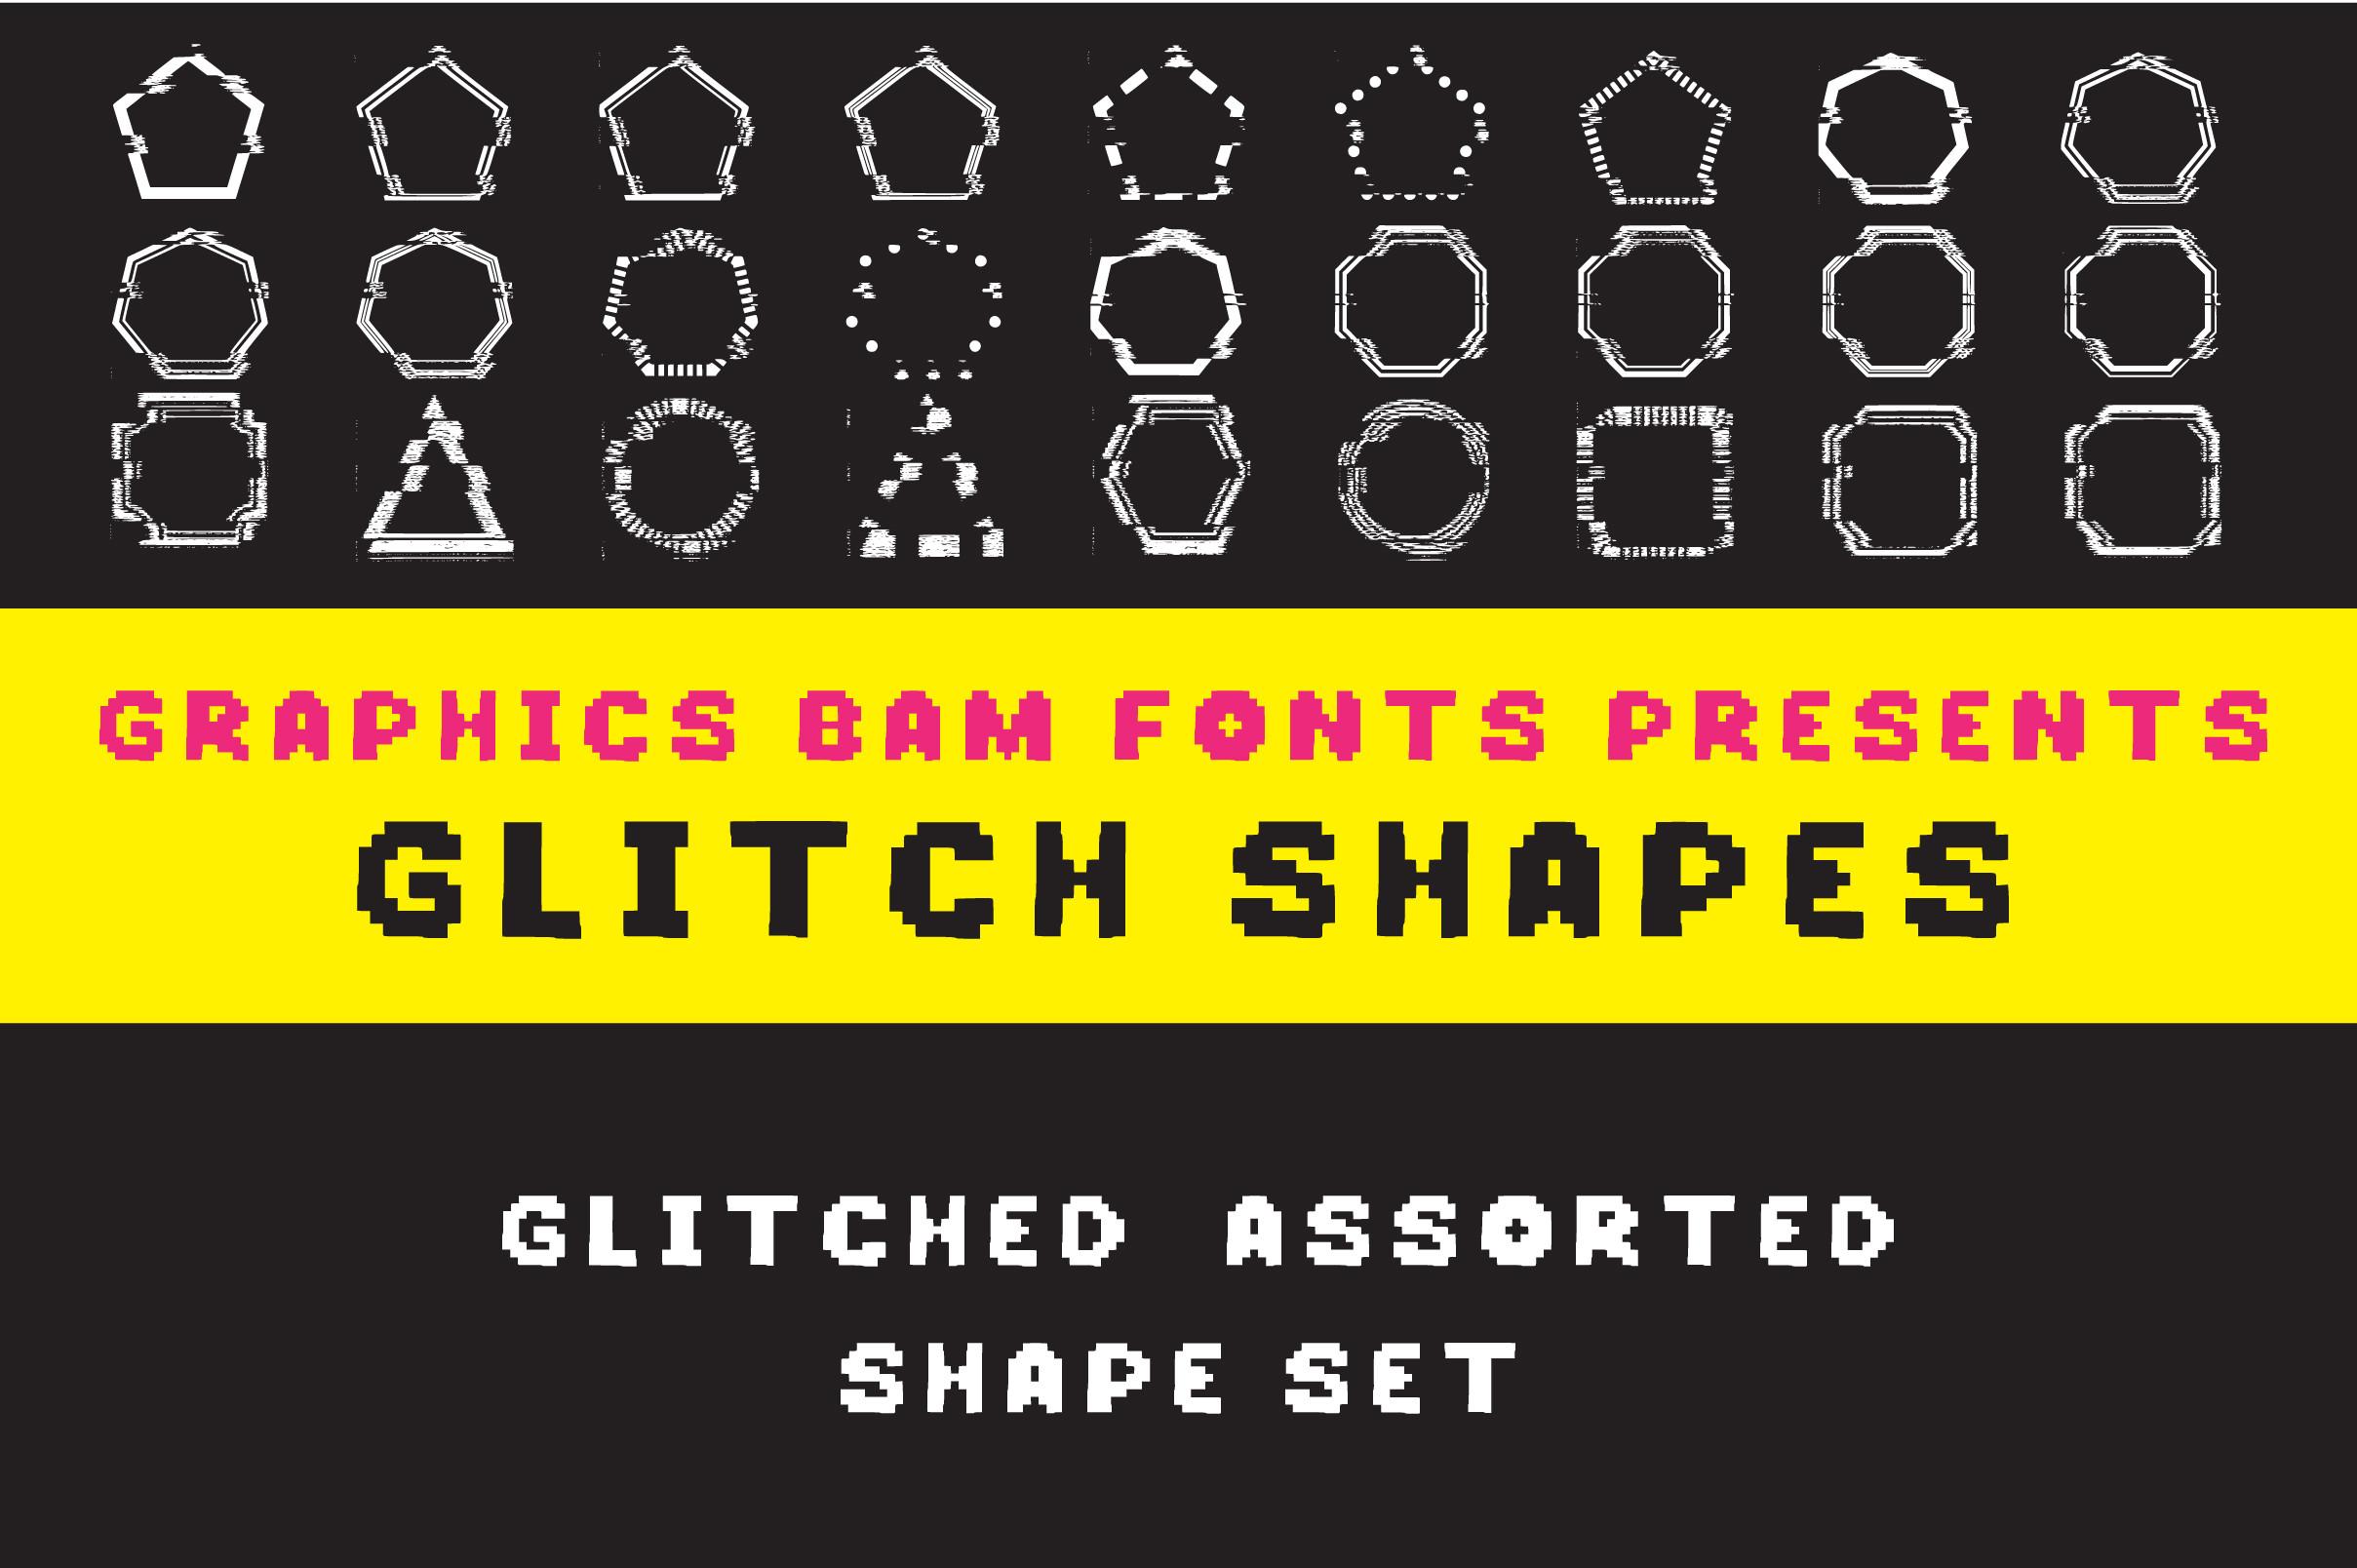 Glitch Shapes Font